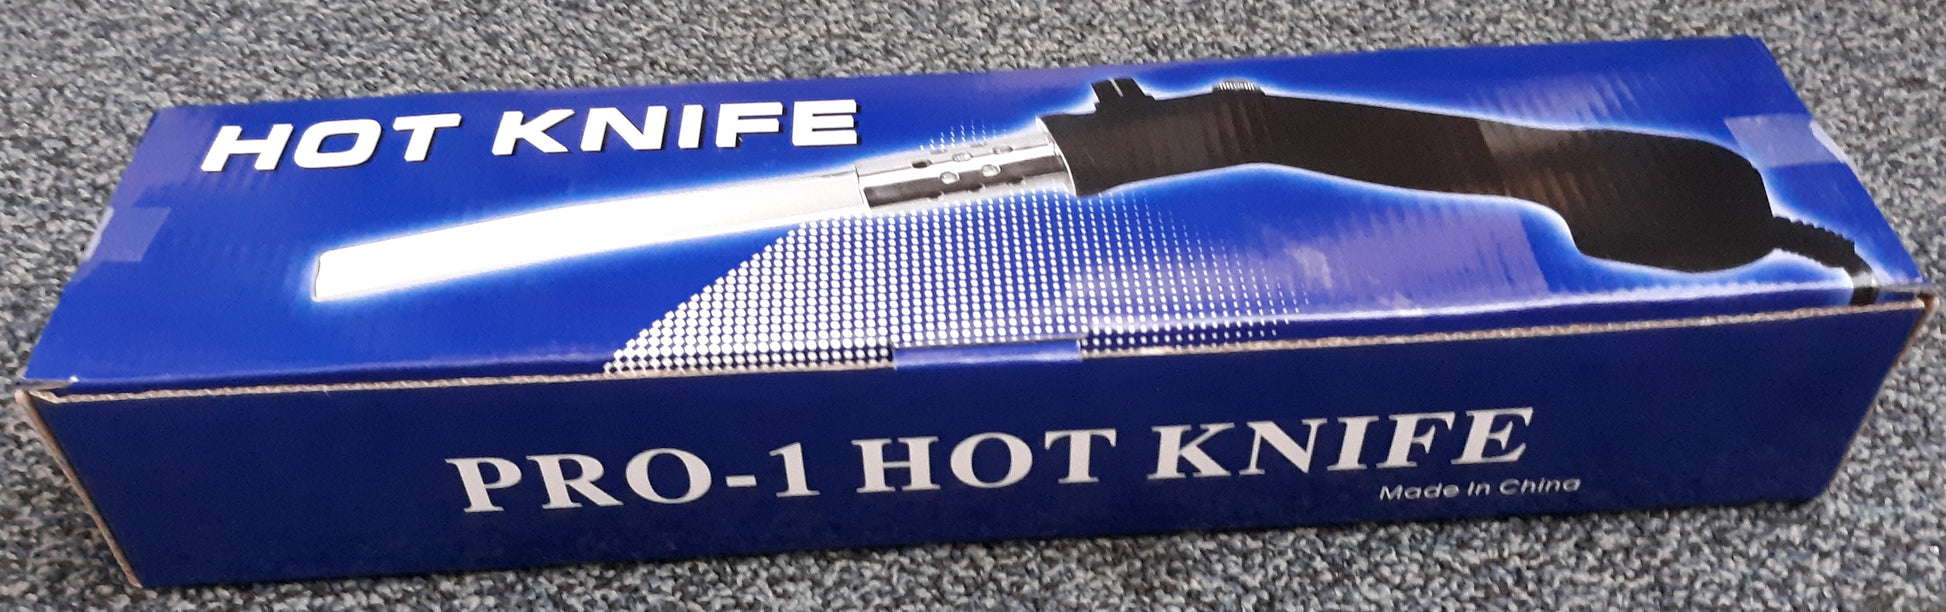 130-Watt Heavy-Duty Hot Knife